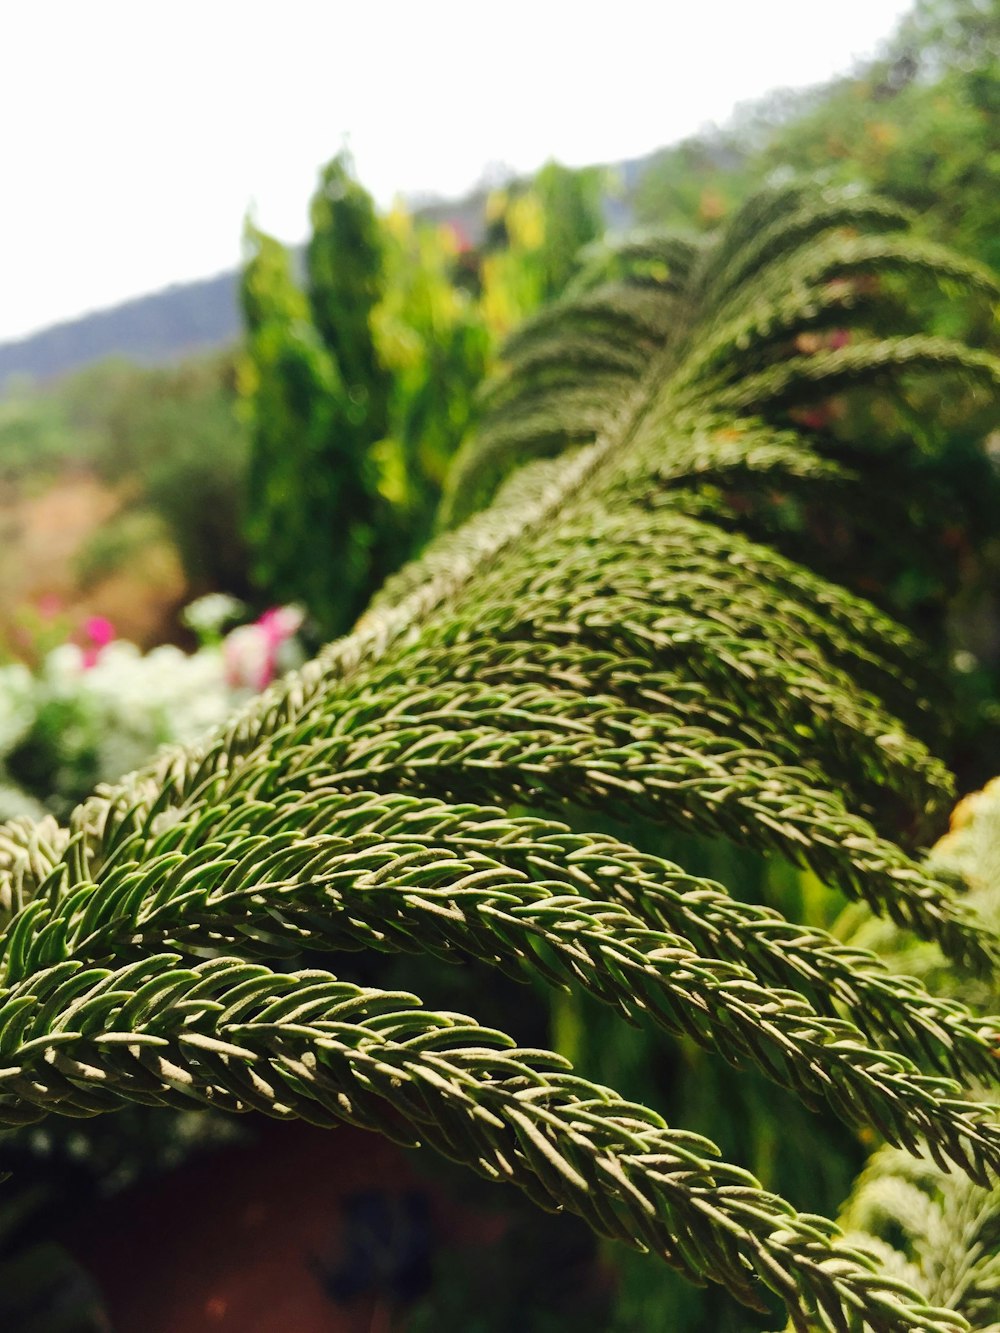 昼間のクローズアップ撮影でグリーンシダ植物